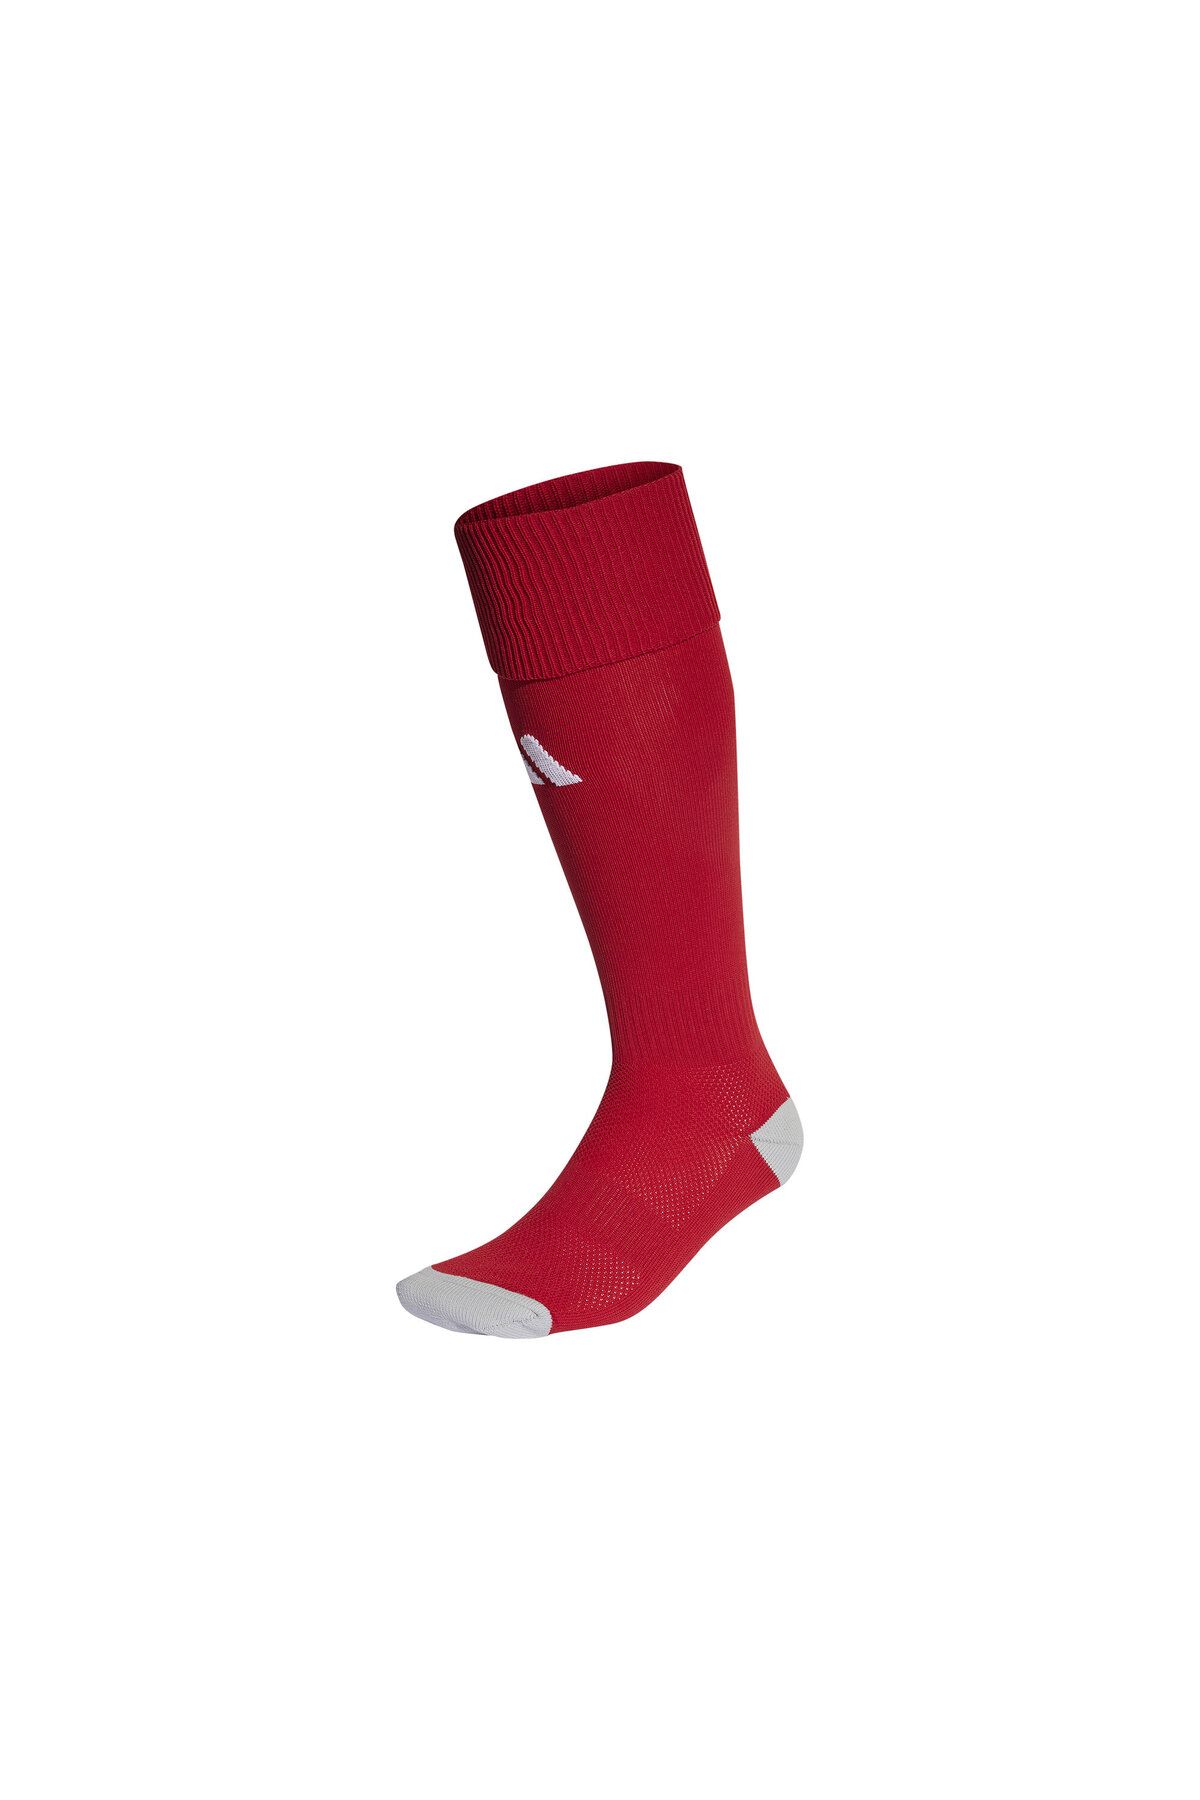 adidas Yetişkin Futbol Maç Çorabı Futbol Tozluk Futbol Halısaha Çorabı Konç Halı Saha Çorabı